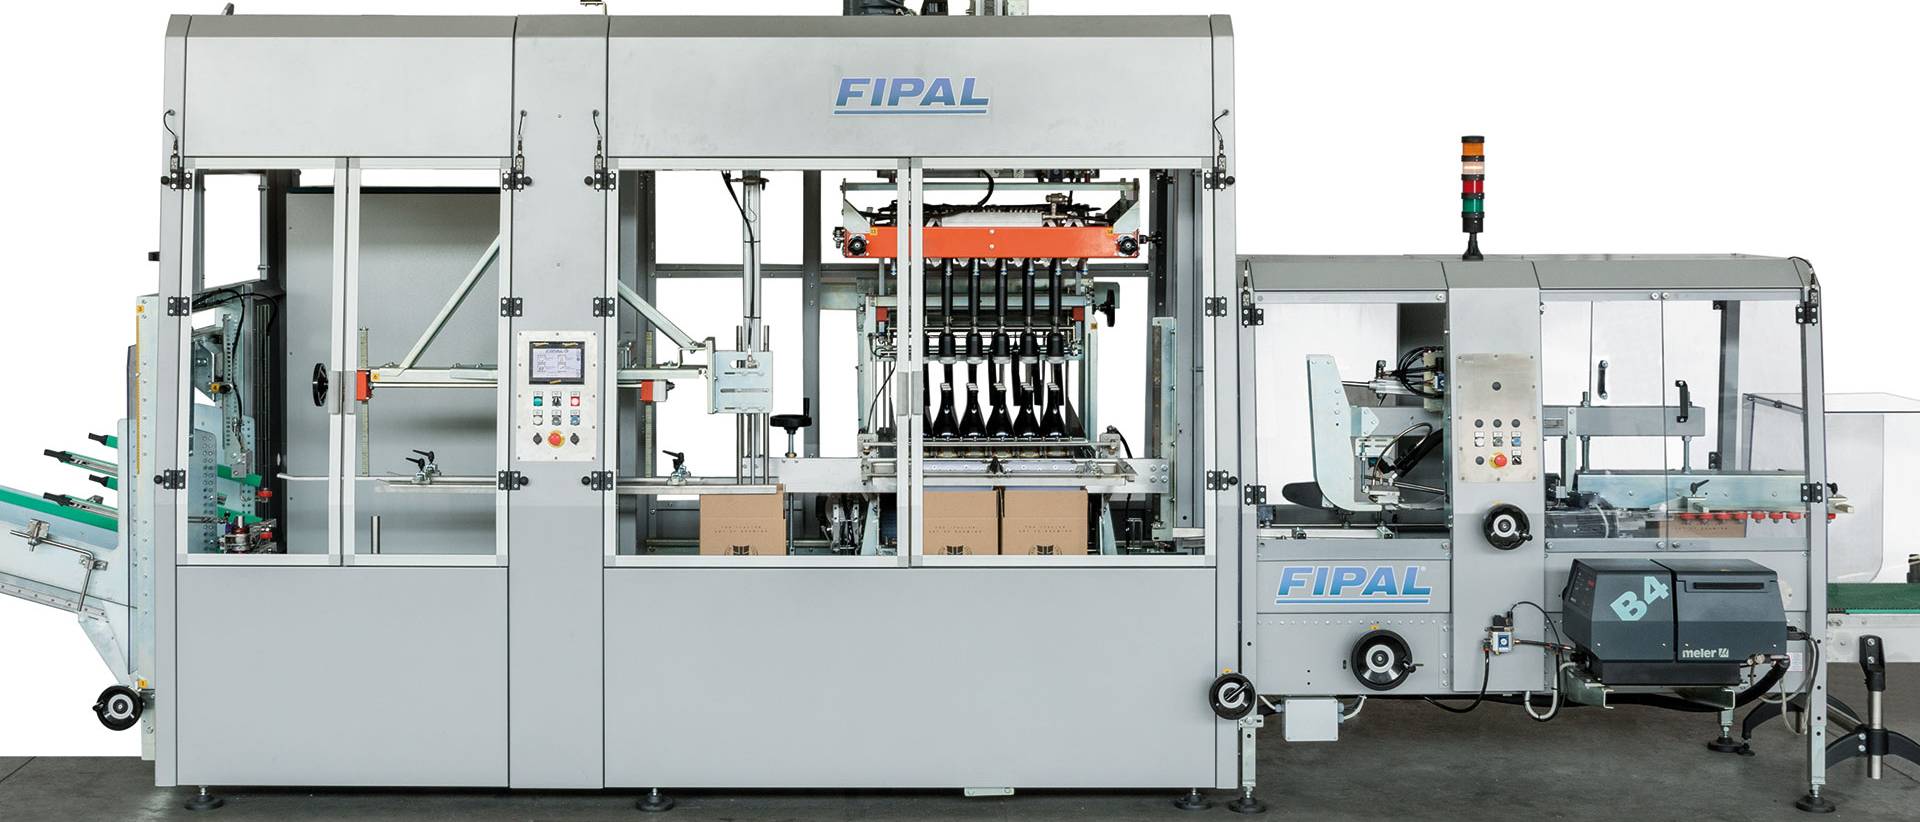 Monoblocchi FIPAL: macchine per confezionamento ad alte prestazioni in spazi ridotti